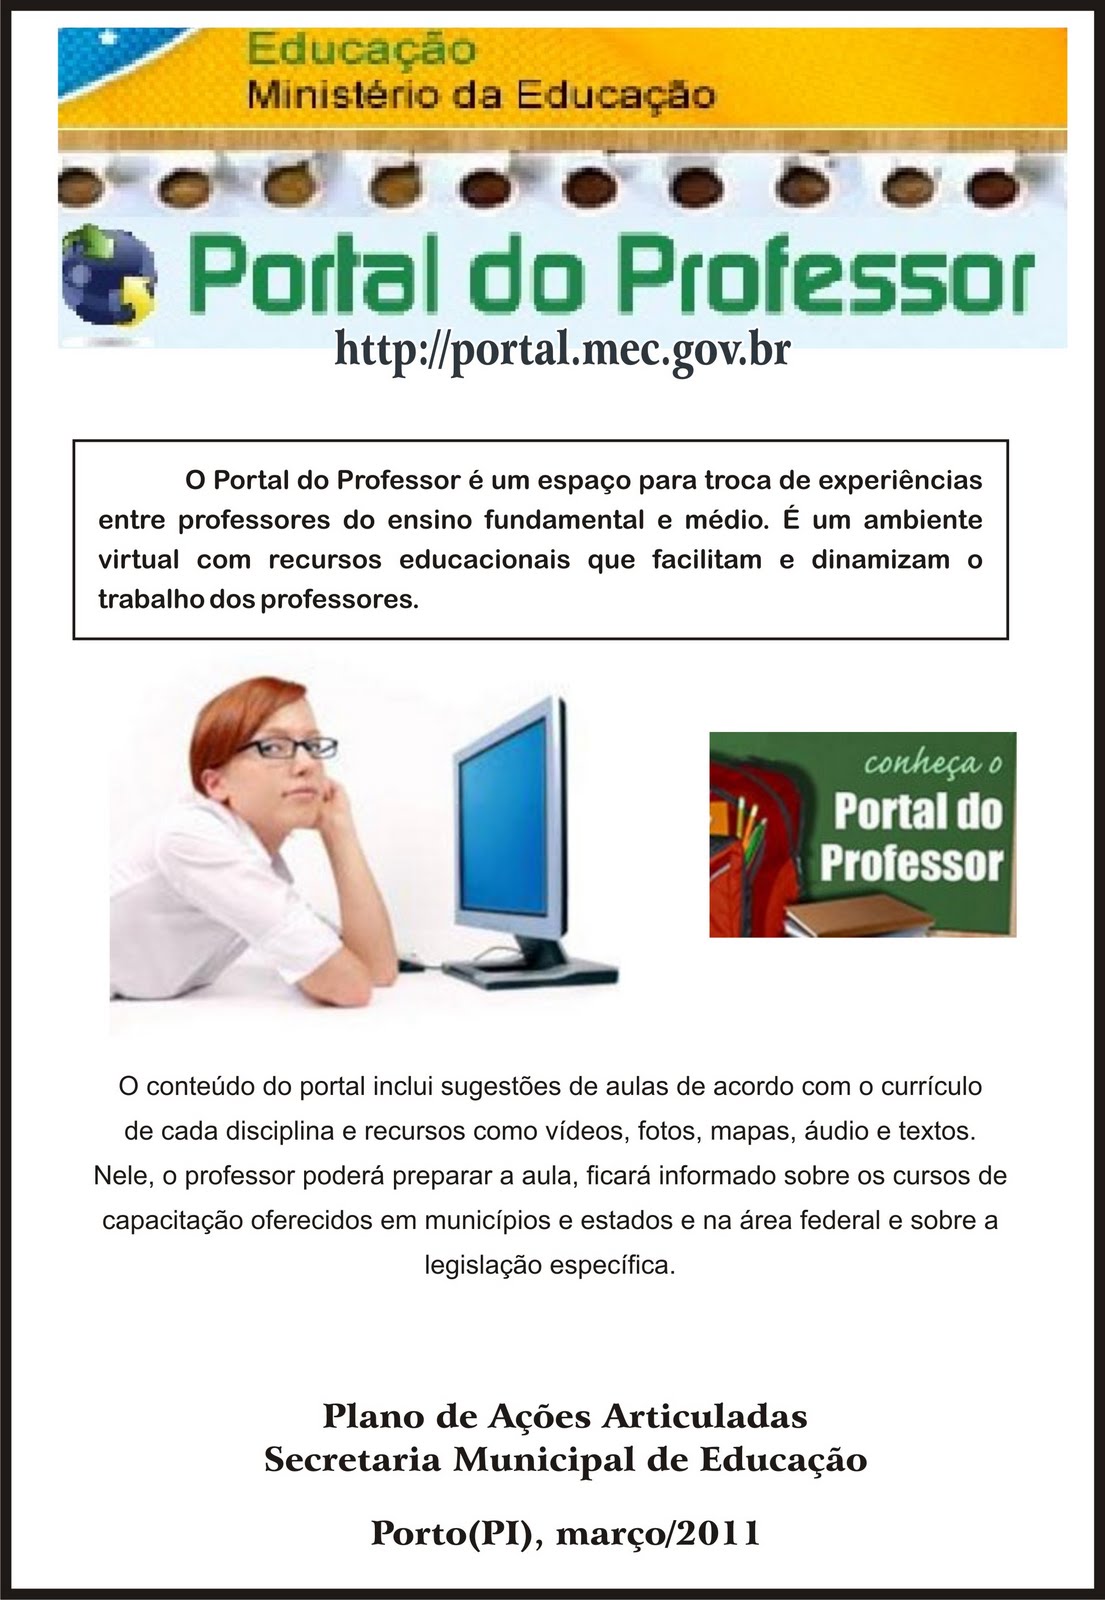 Portal do Professor - Ditado: maneira eficaz de trabalhar a